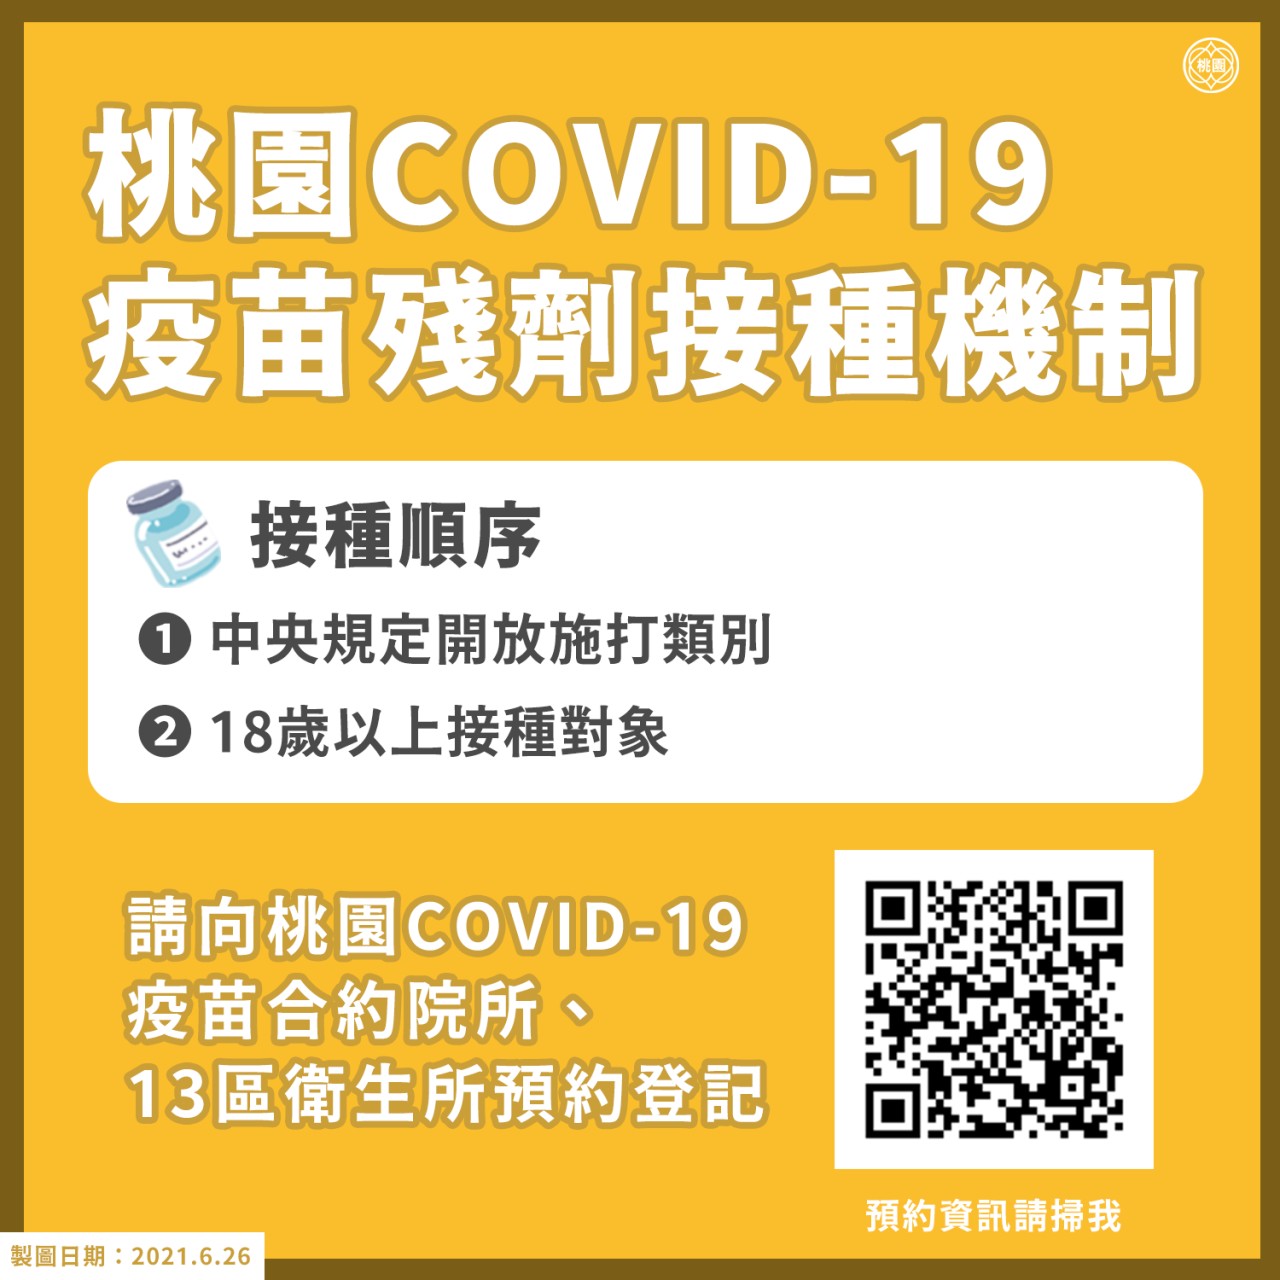 COVID-19疫苗殘劑如何登記預約？各縣市懶人包